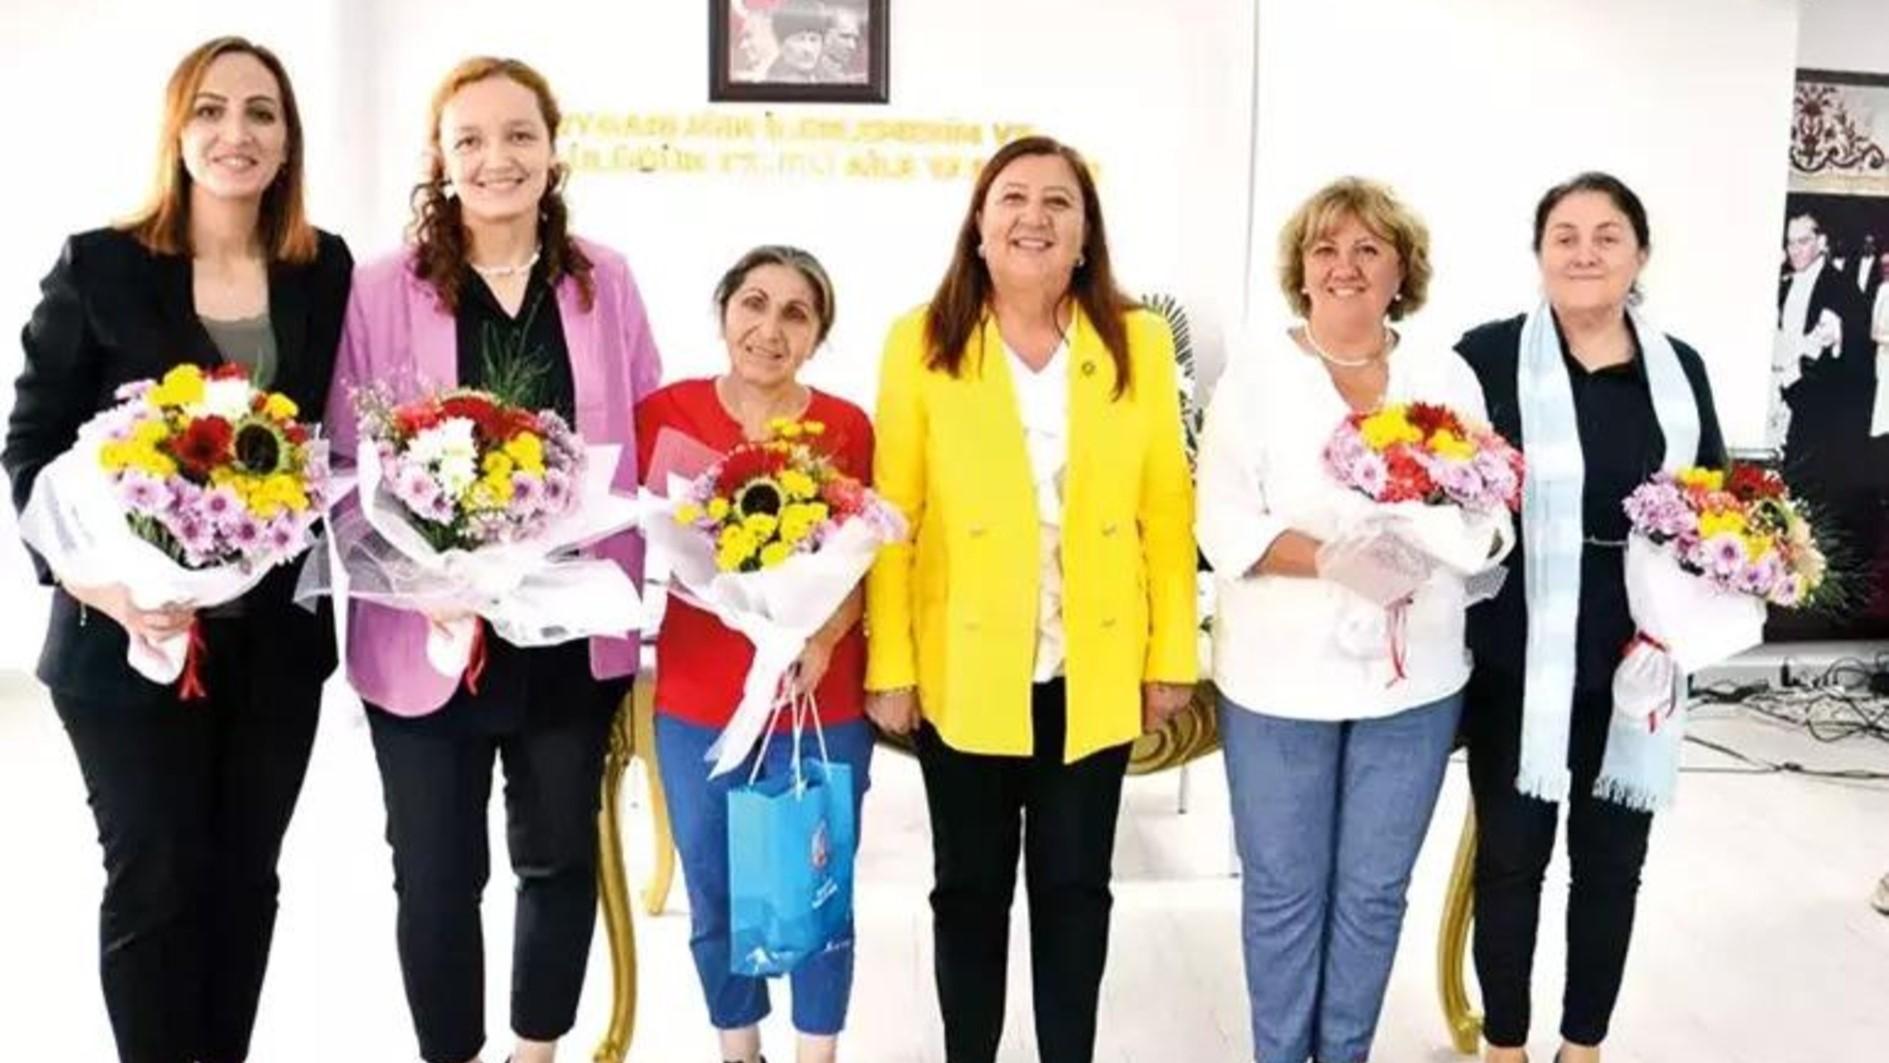 TÜRKIYE-campagne gelanceerd om meer vrouwelijke Mukhtars aan te moedigen Zeven vrouwen die medeoprichter zijn van de Global Equality and Inclusion Network Association (KAPI) zijn begonnen aan een missie om de vertegenwoordiging van vrouwelijke mukhtars (hoofden) in dorpen te versterken en training voor de “Open a Door”-campagne te faciliteren. campagne.